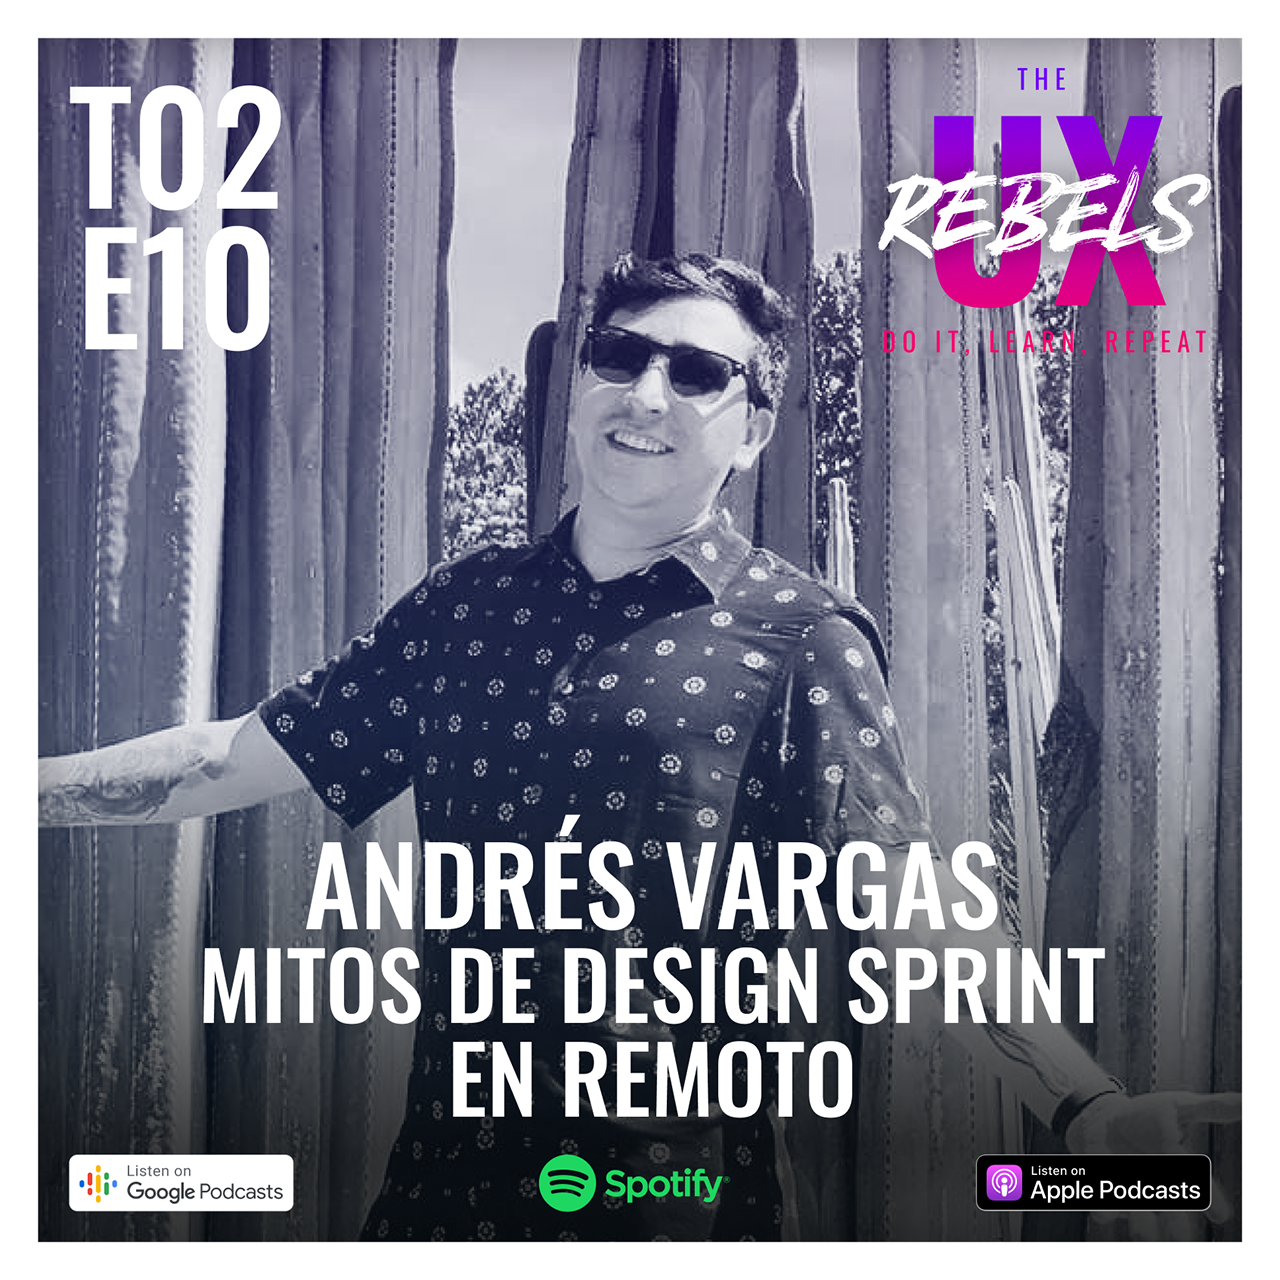 Episodio con Andrés Vargas sobre Design Sprints